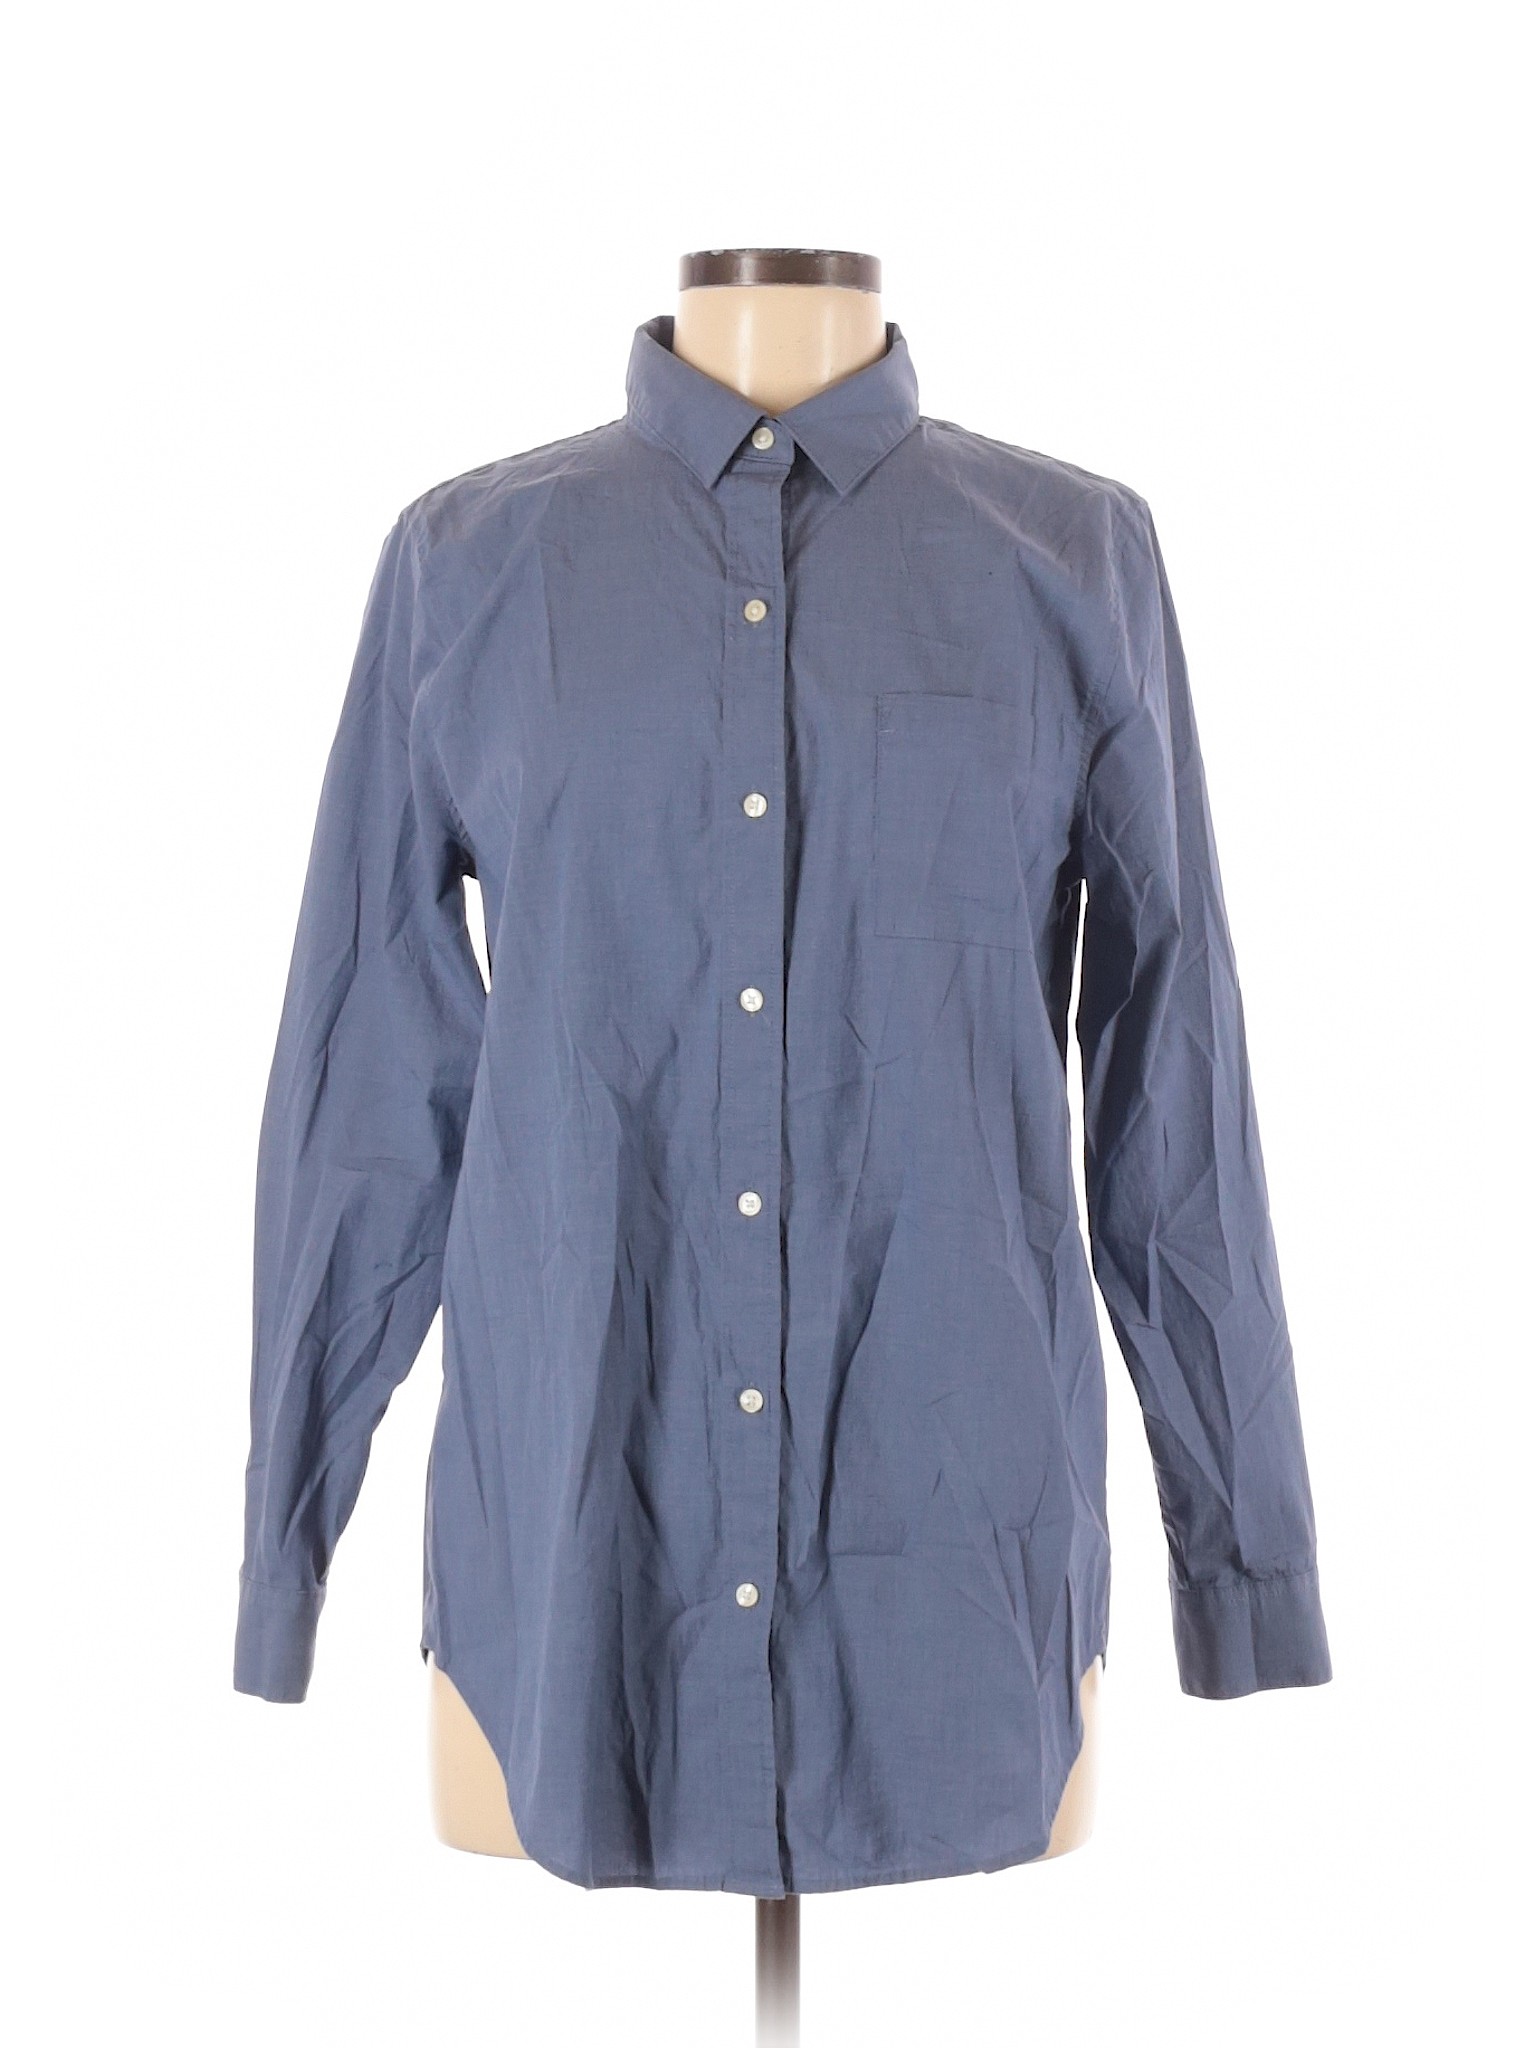 Banana Republic Factory Store Women Blue Long Sleeve Button-Down Shirt ...